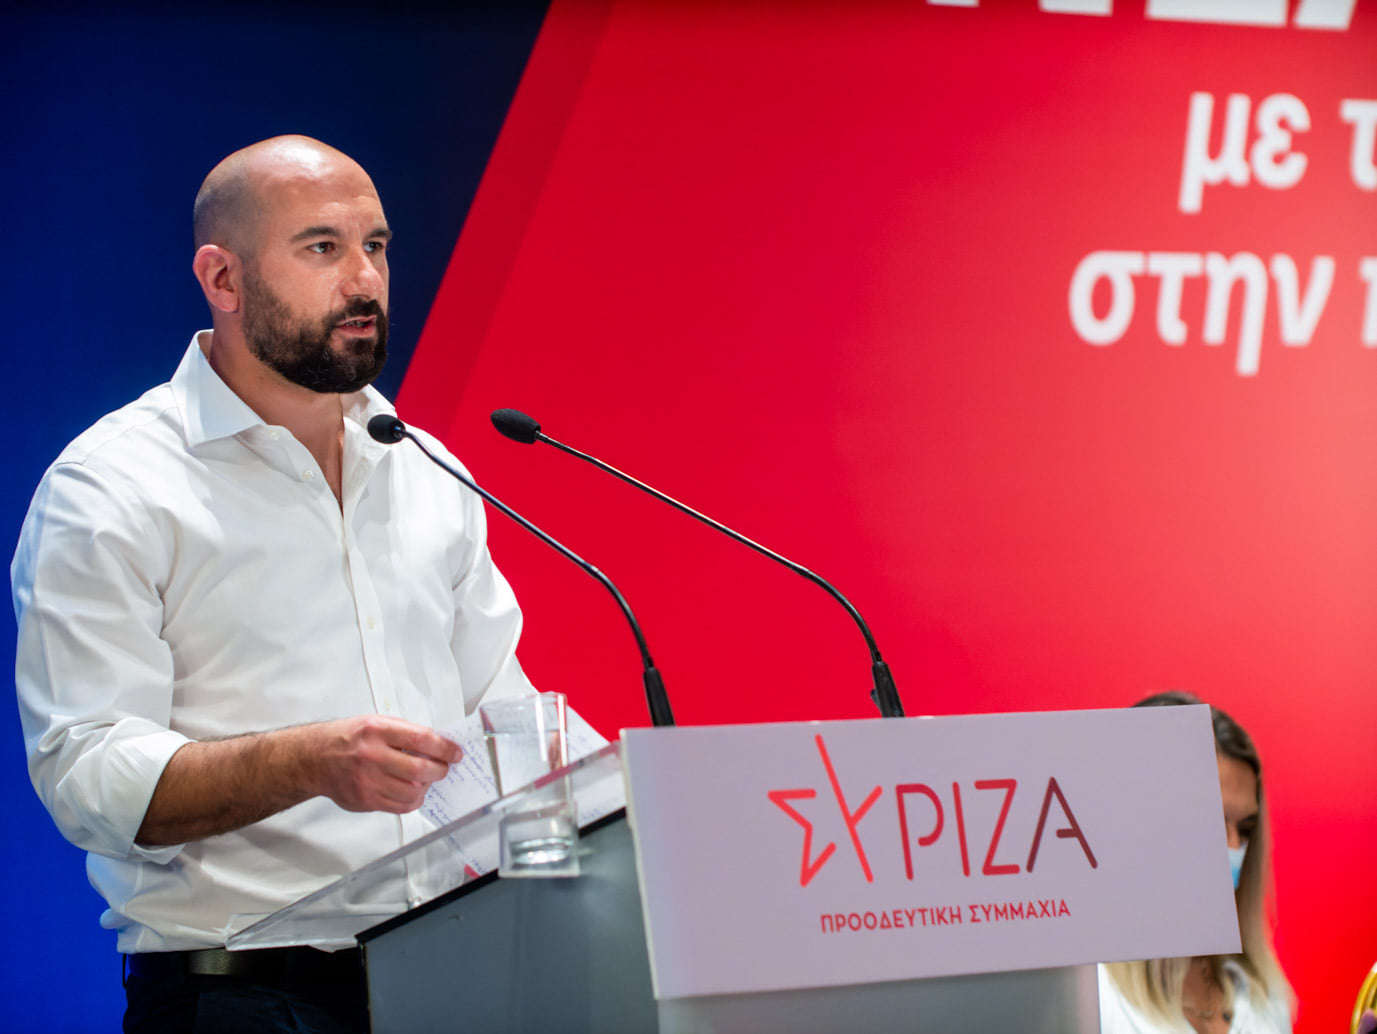 Δ. Τζανακόπουλος: Θα εξαντλήσουμε κάθε κοινοβουλευτικό και πολιτικό μέσο για να αναδείξουμε αυτή τη συνταγματική εκτροπή - βίντεο